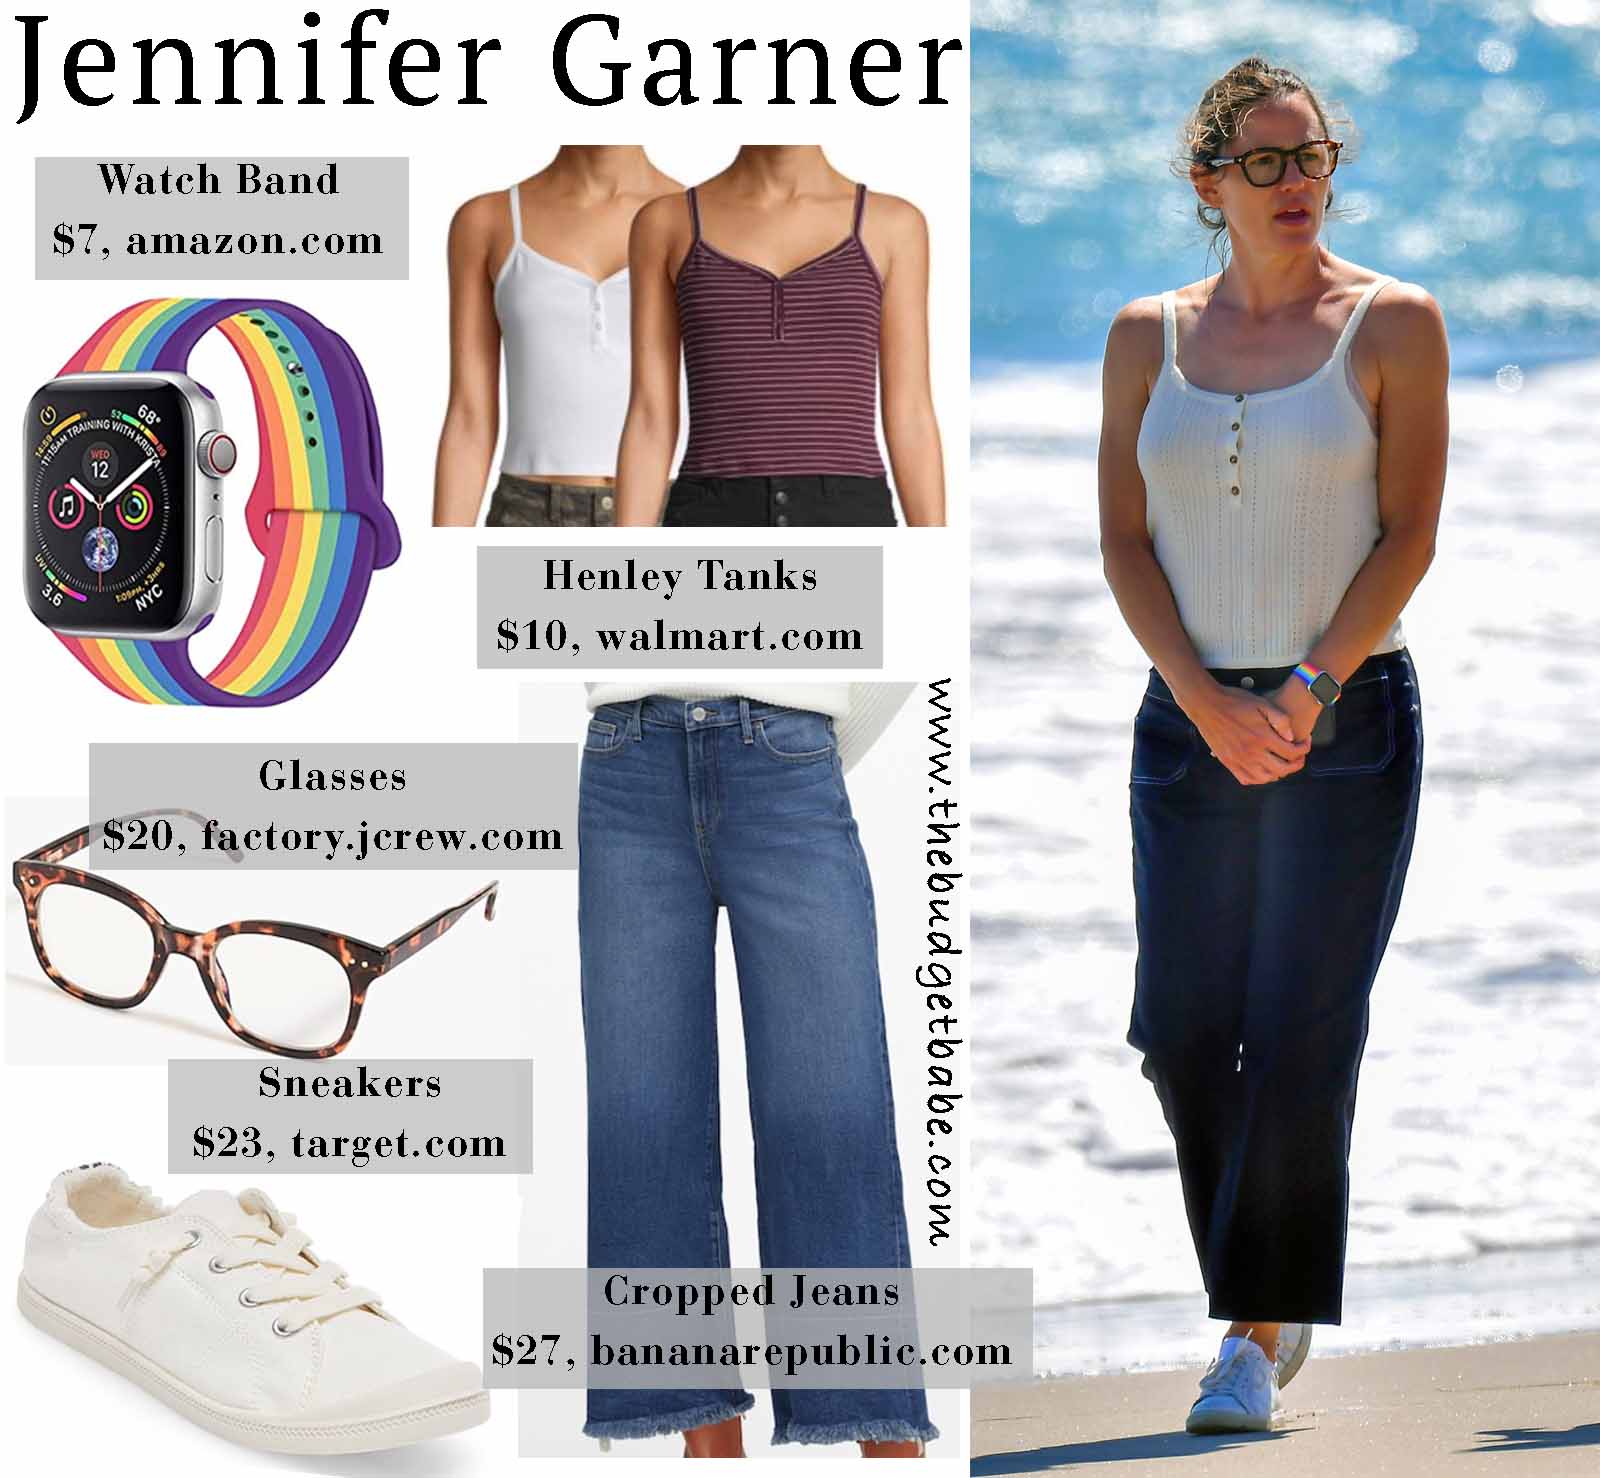 Jenner Garner hits the beach in summer staples!